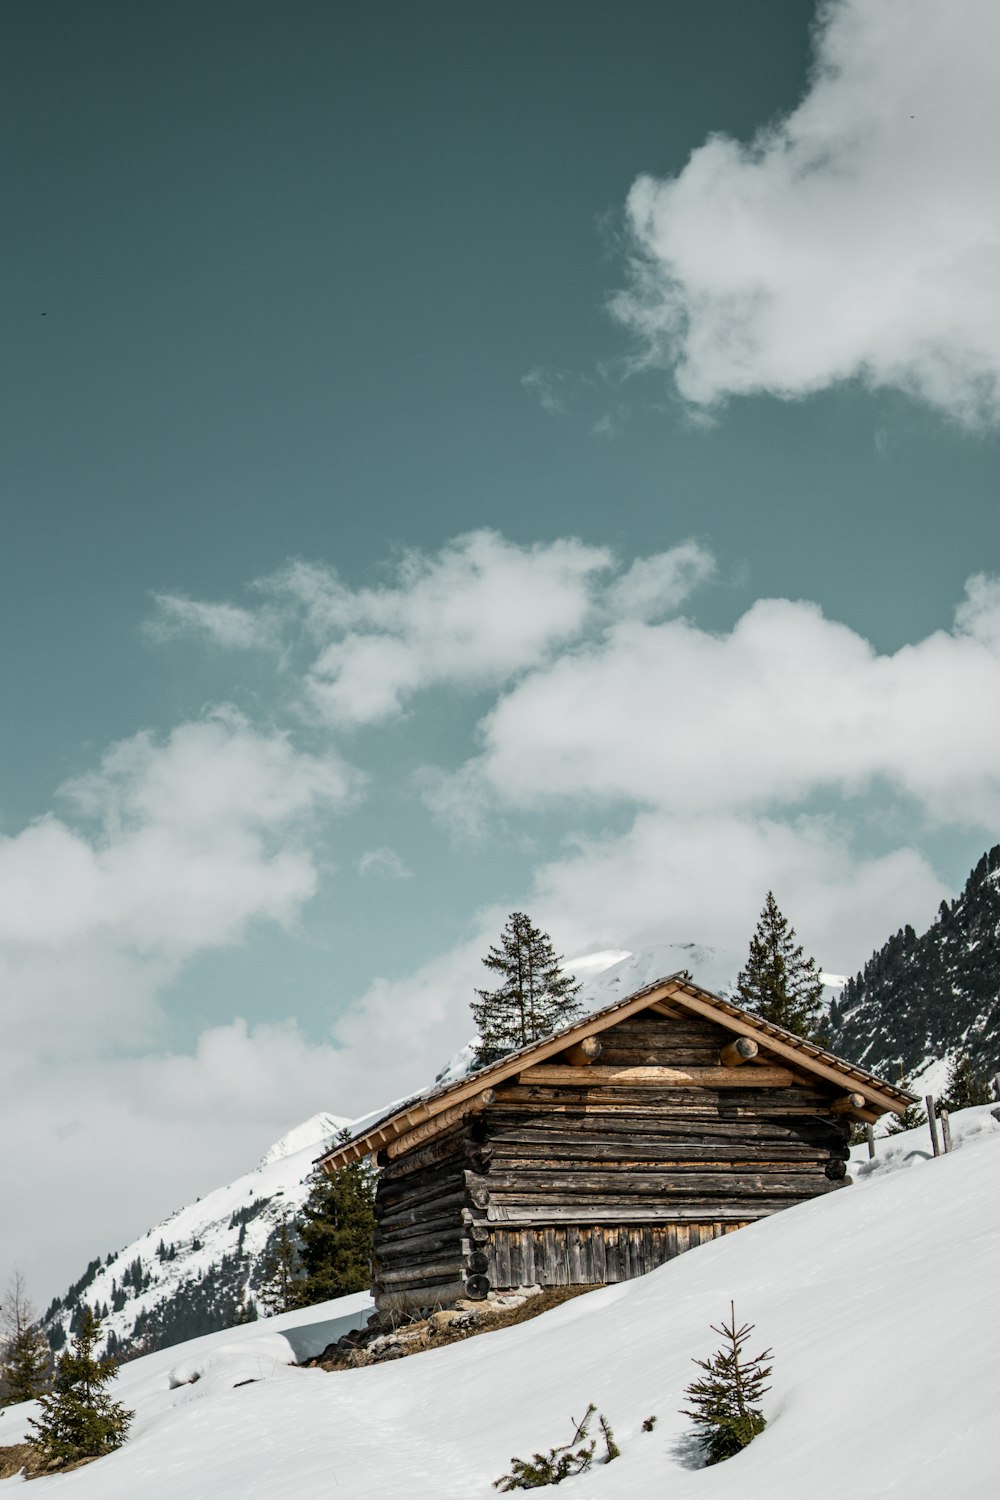 Una cabaña de troncos en una montaña nevada bajo un cielo nublado